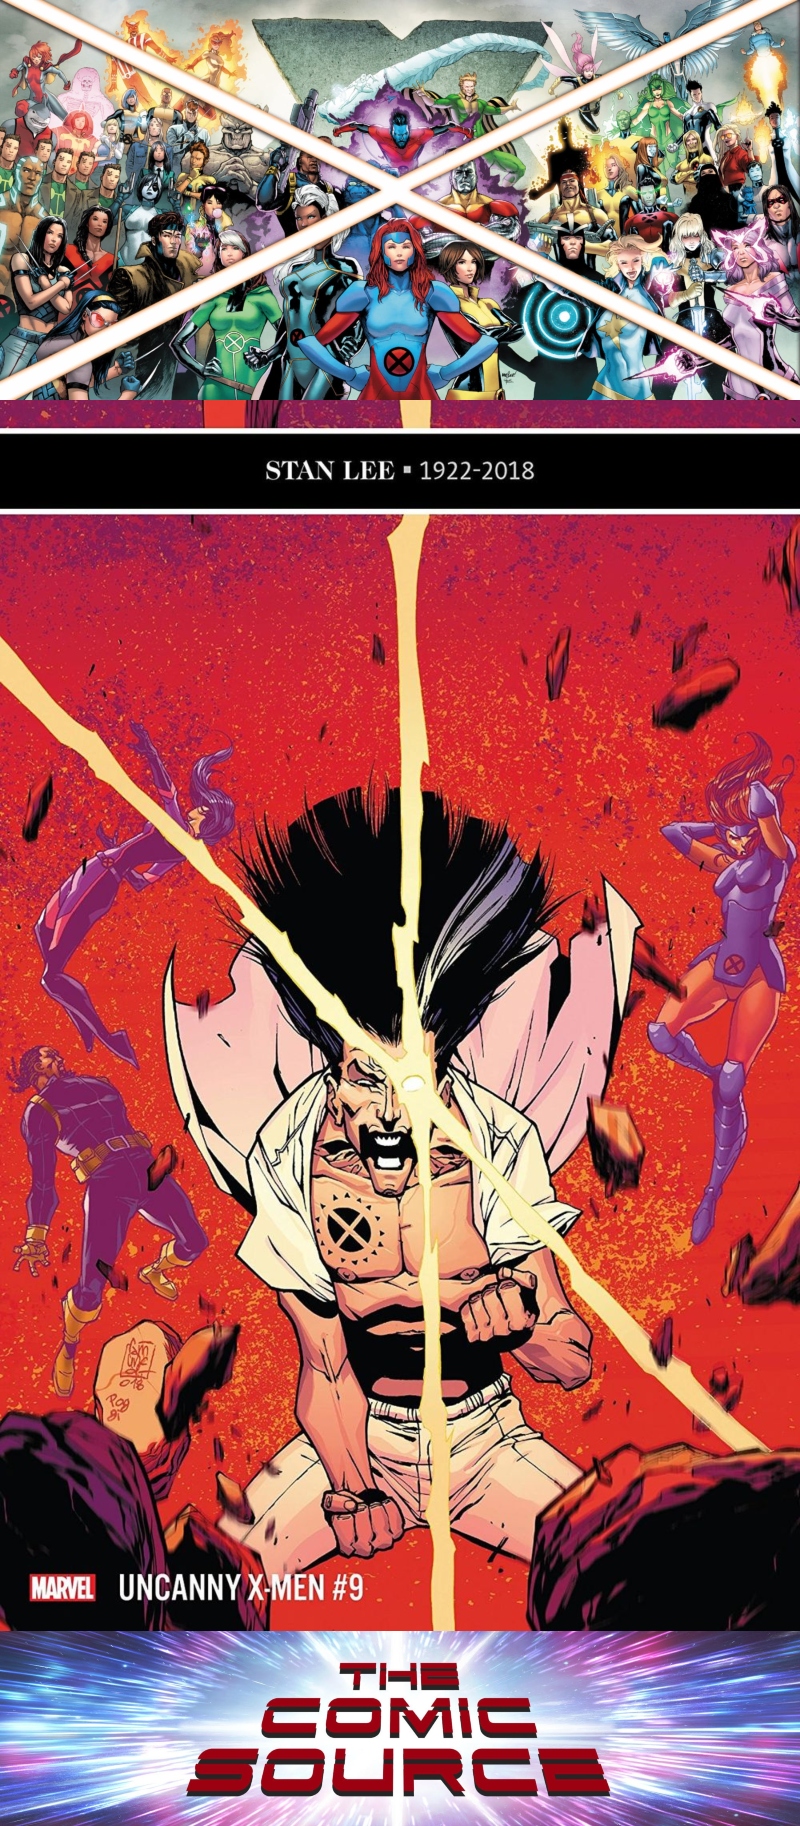 Uncanny X-Men #9 Spotlight: The Comic Source Podcast Episode #680